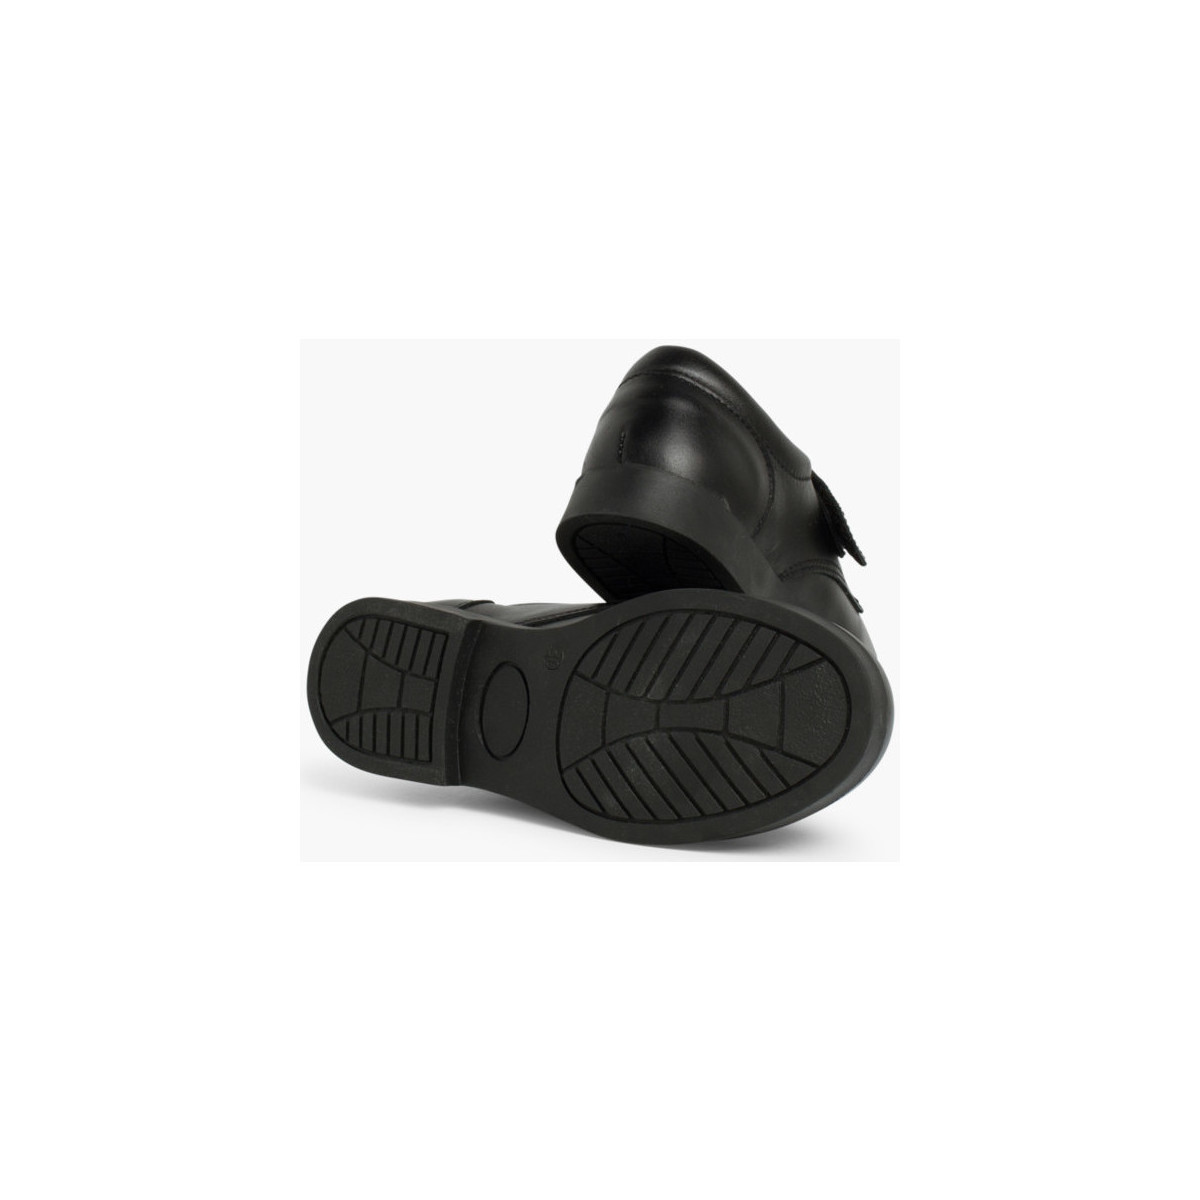 Pisamonas Noir Chaussures d´école avec à scratch pour Garçon 8H4km0jD